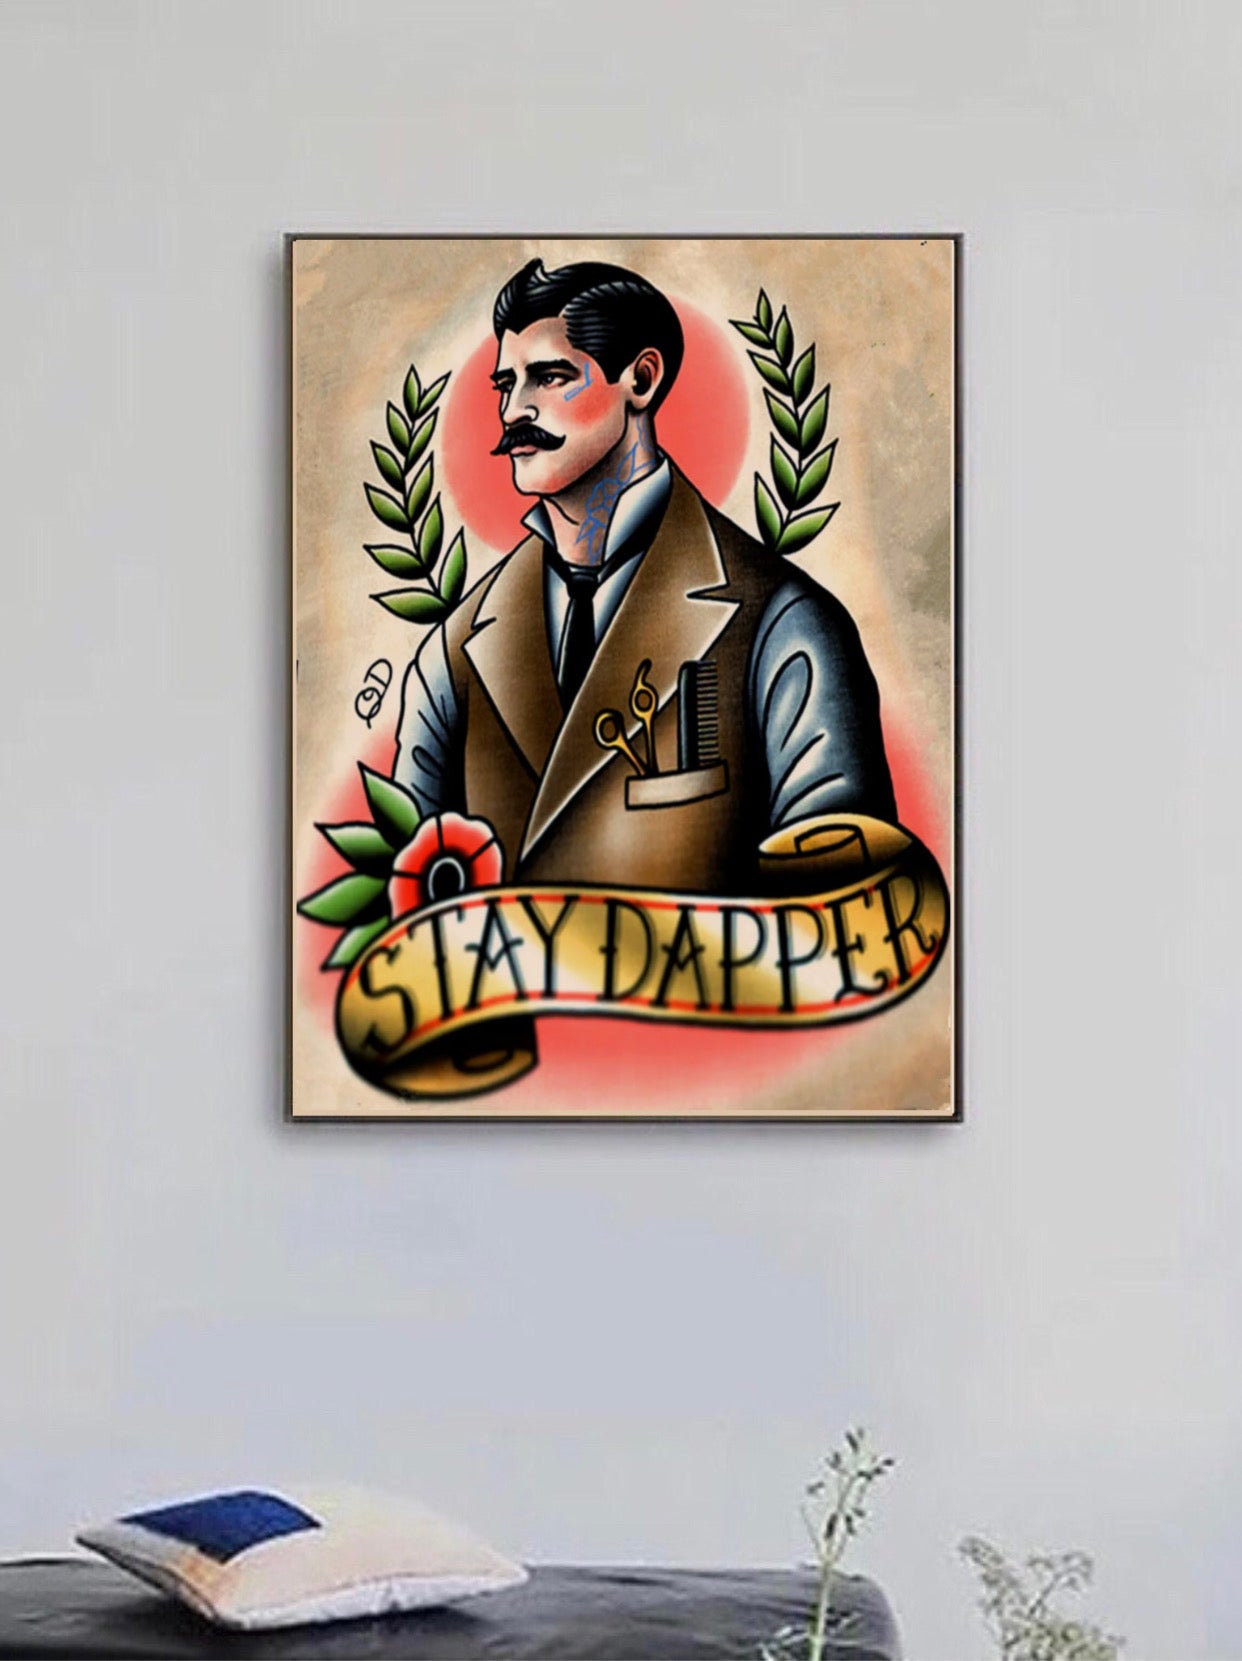 "stay dapper" tattoo poster